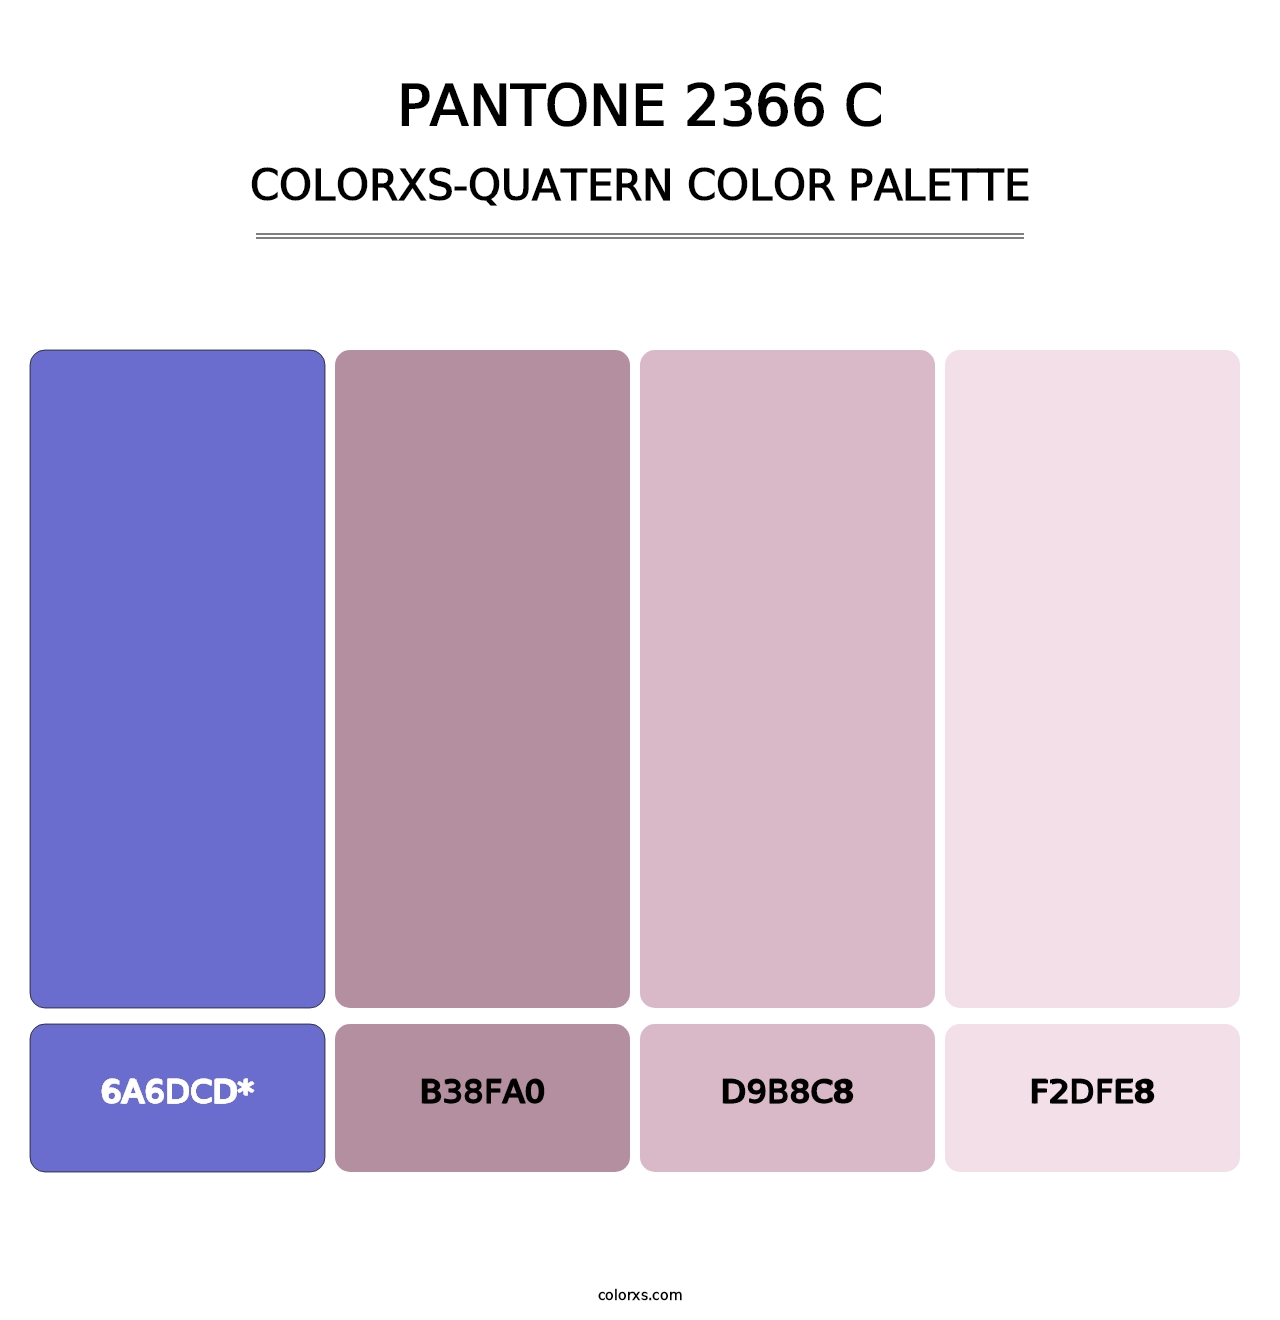 PANTONE 2366 C - Colorxs Quatern Palette